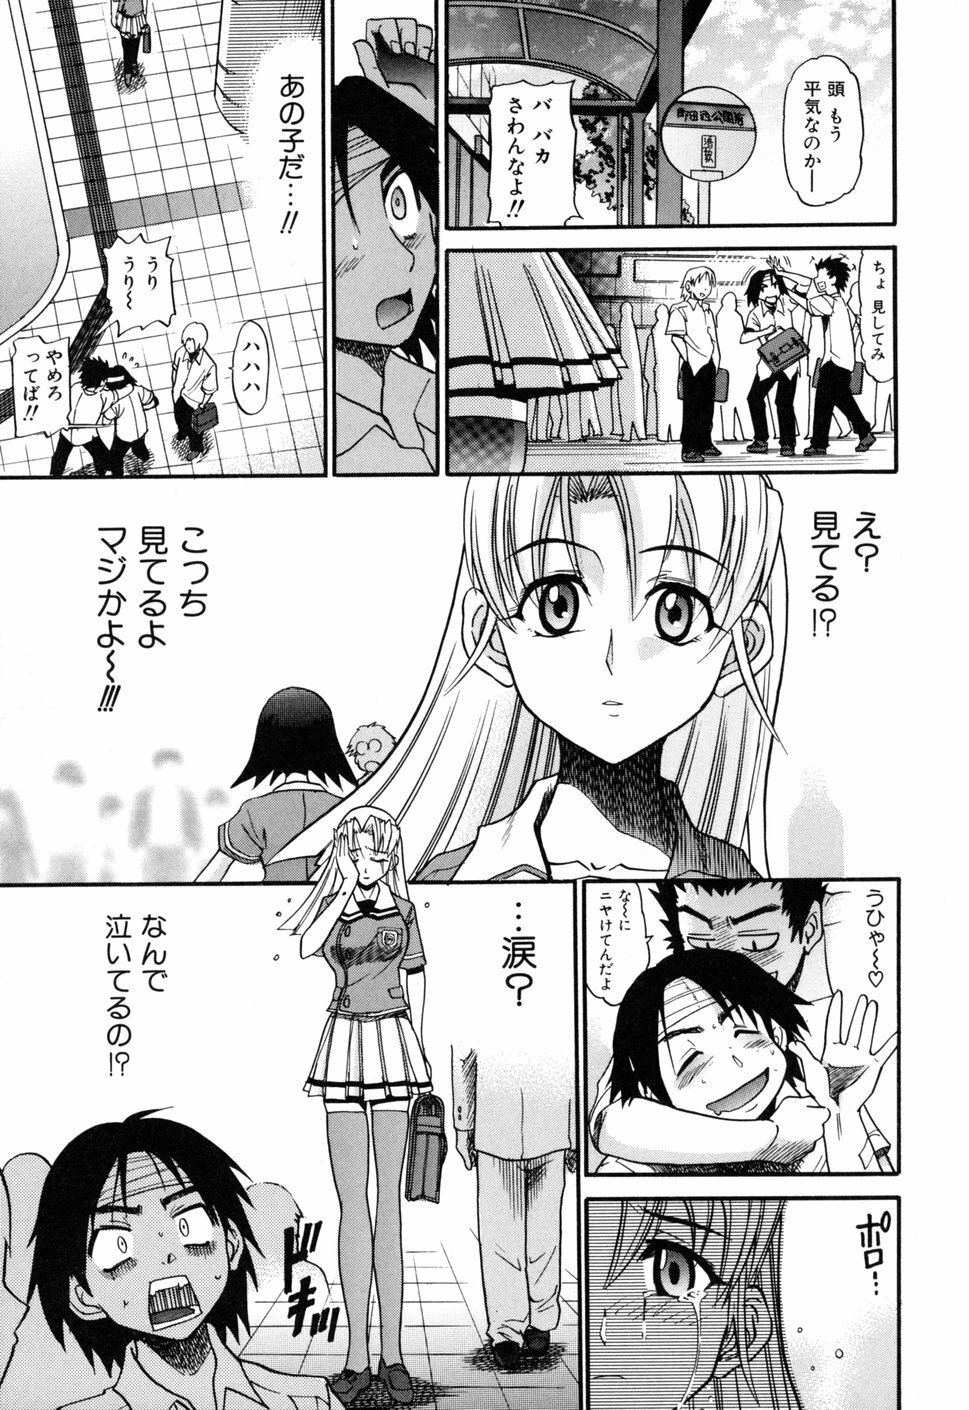 [DISTANCE] Ochiru Tenshi Vol. 1 page 7 full